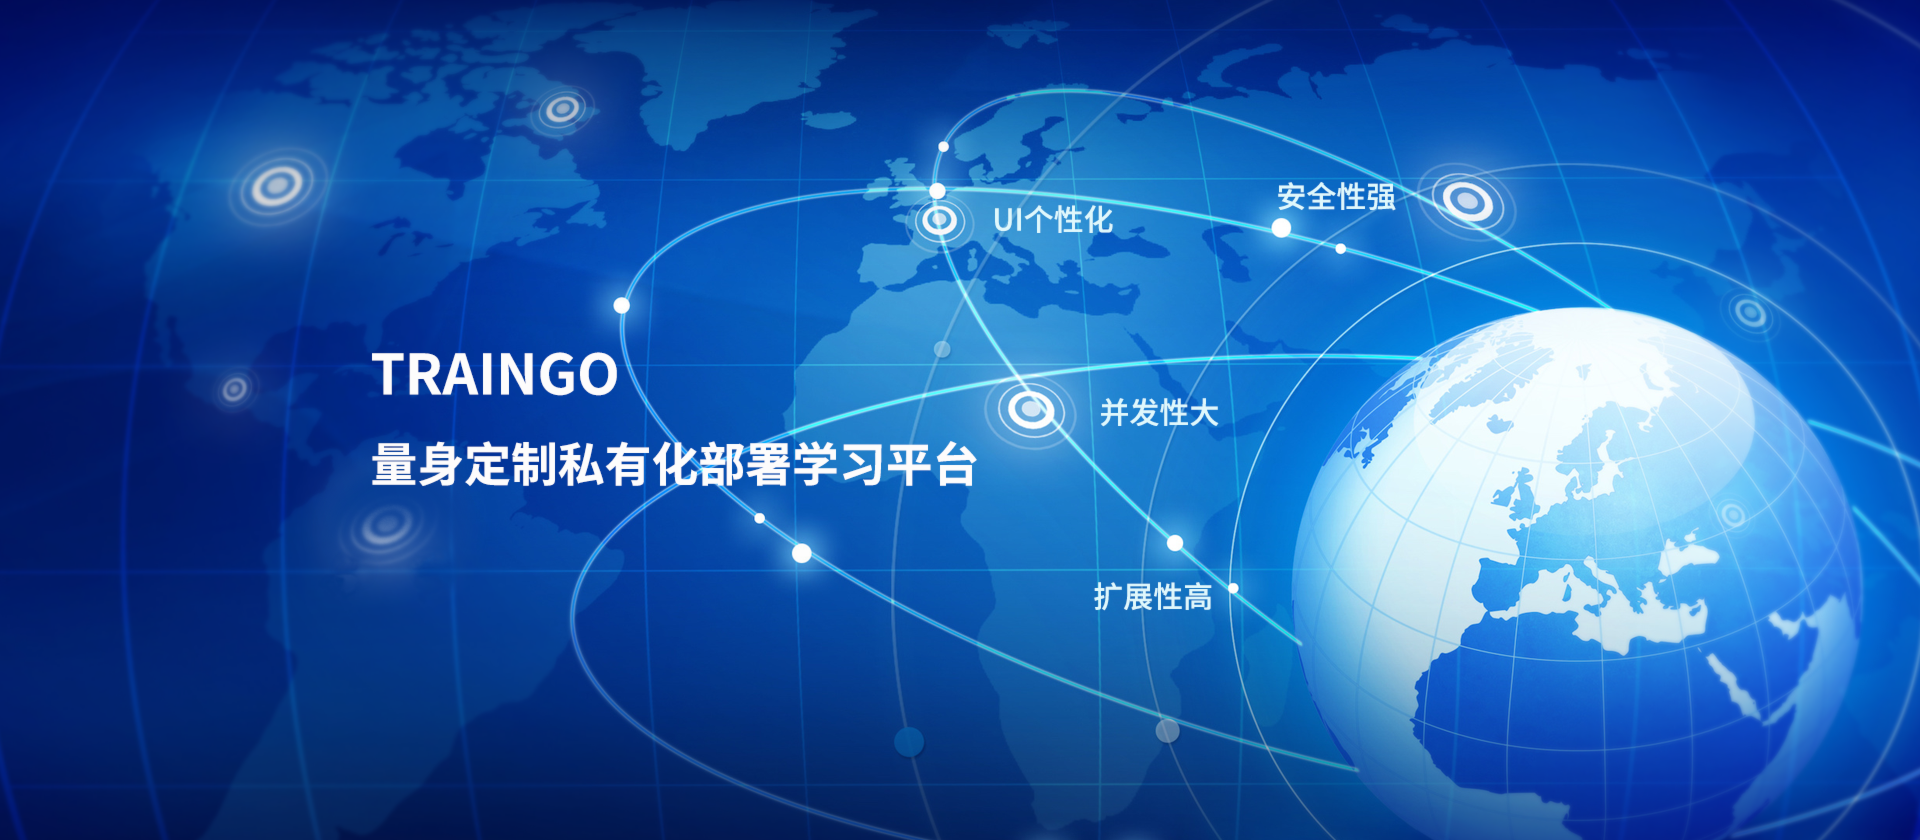 企业在线培训平台-移动在线培训学习平台-Traingo-上海昶戈